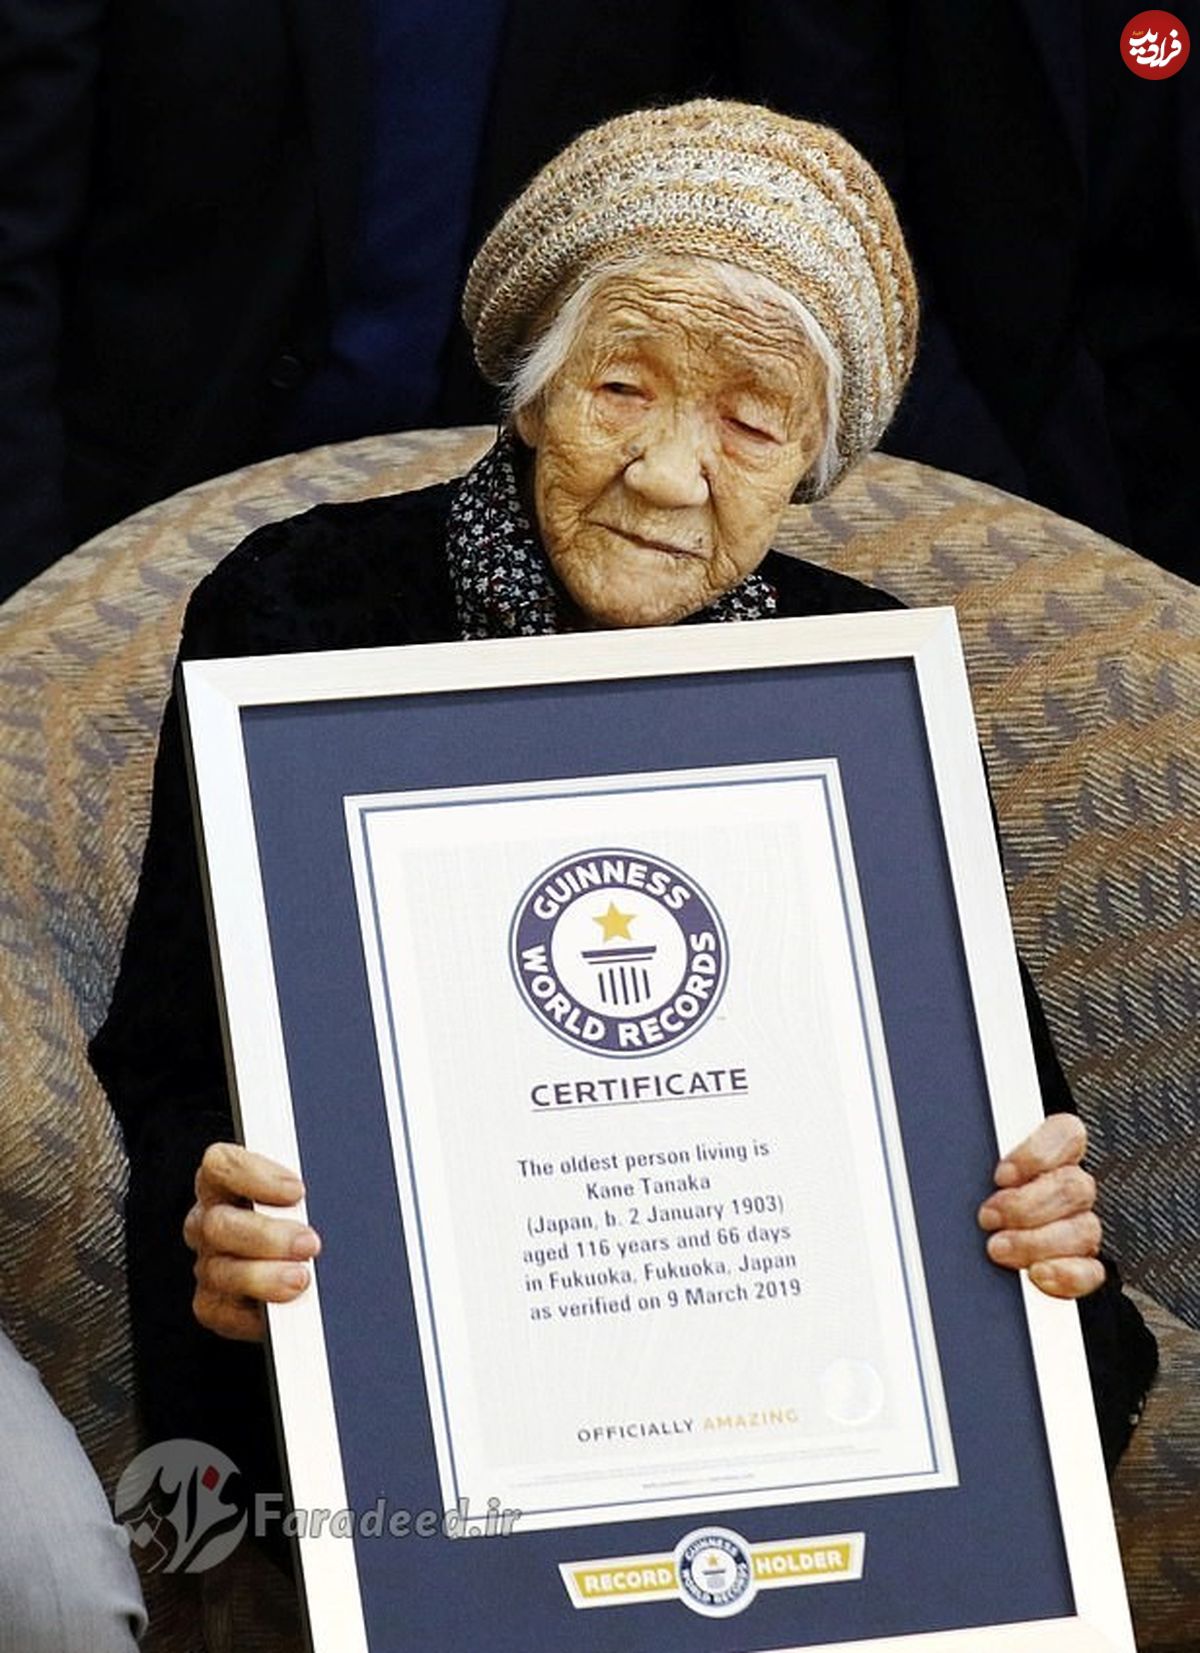 زن ژاپنی پیرترین فرد روی زمین است؟